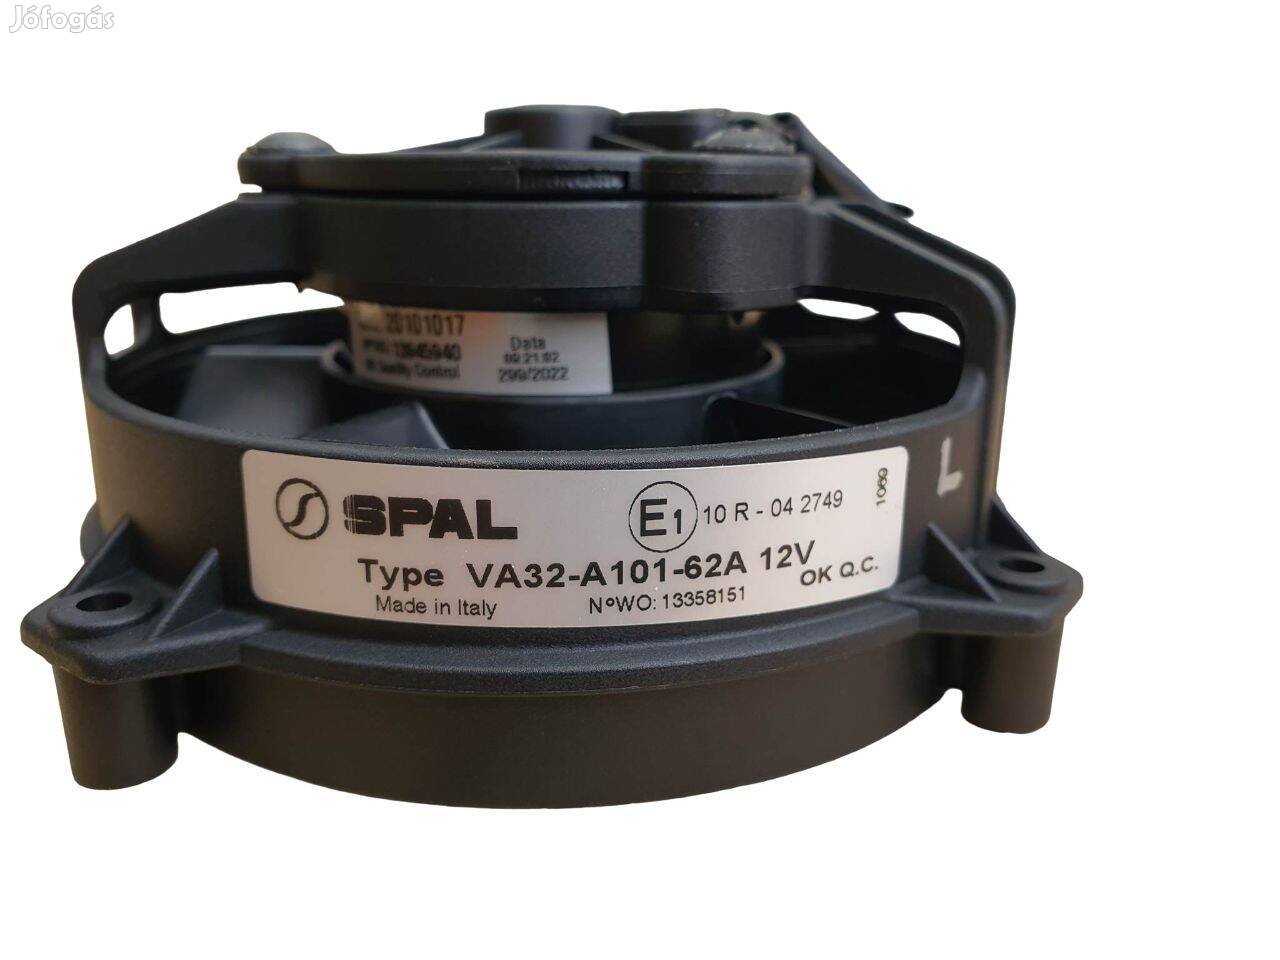 Spal Ventilátor VA32-A101-62A